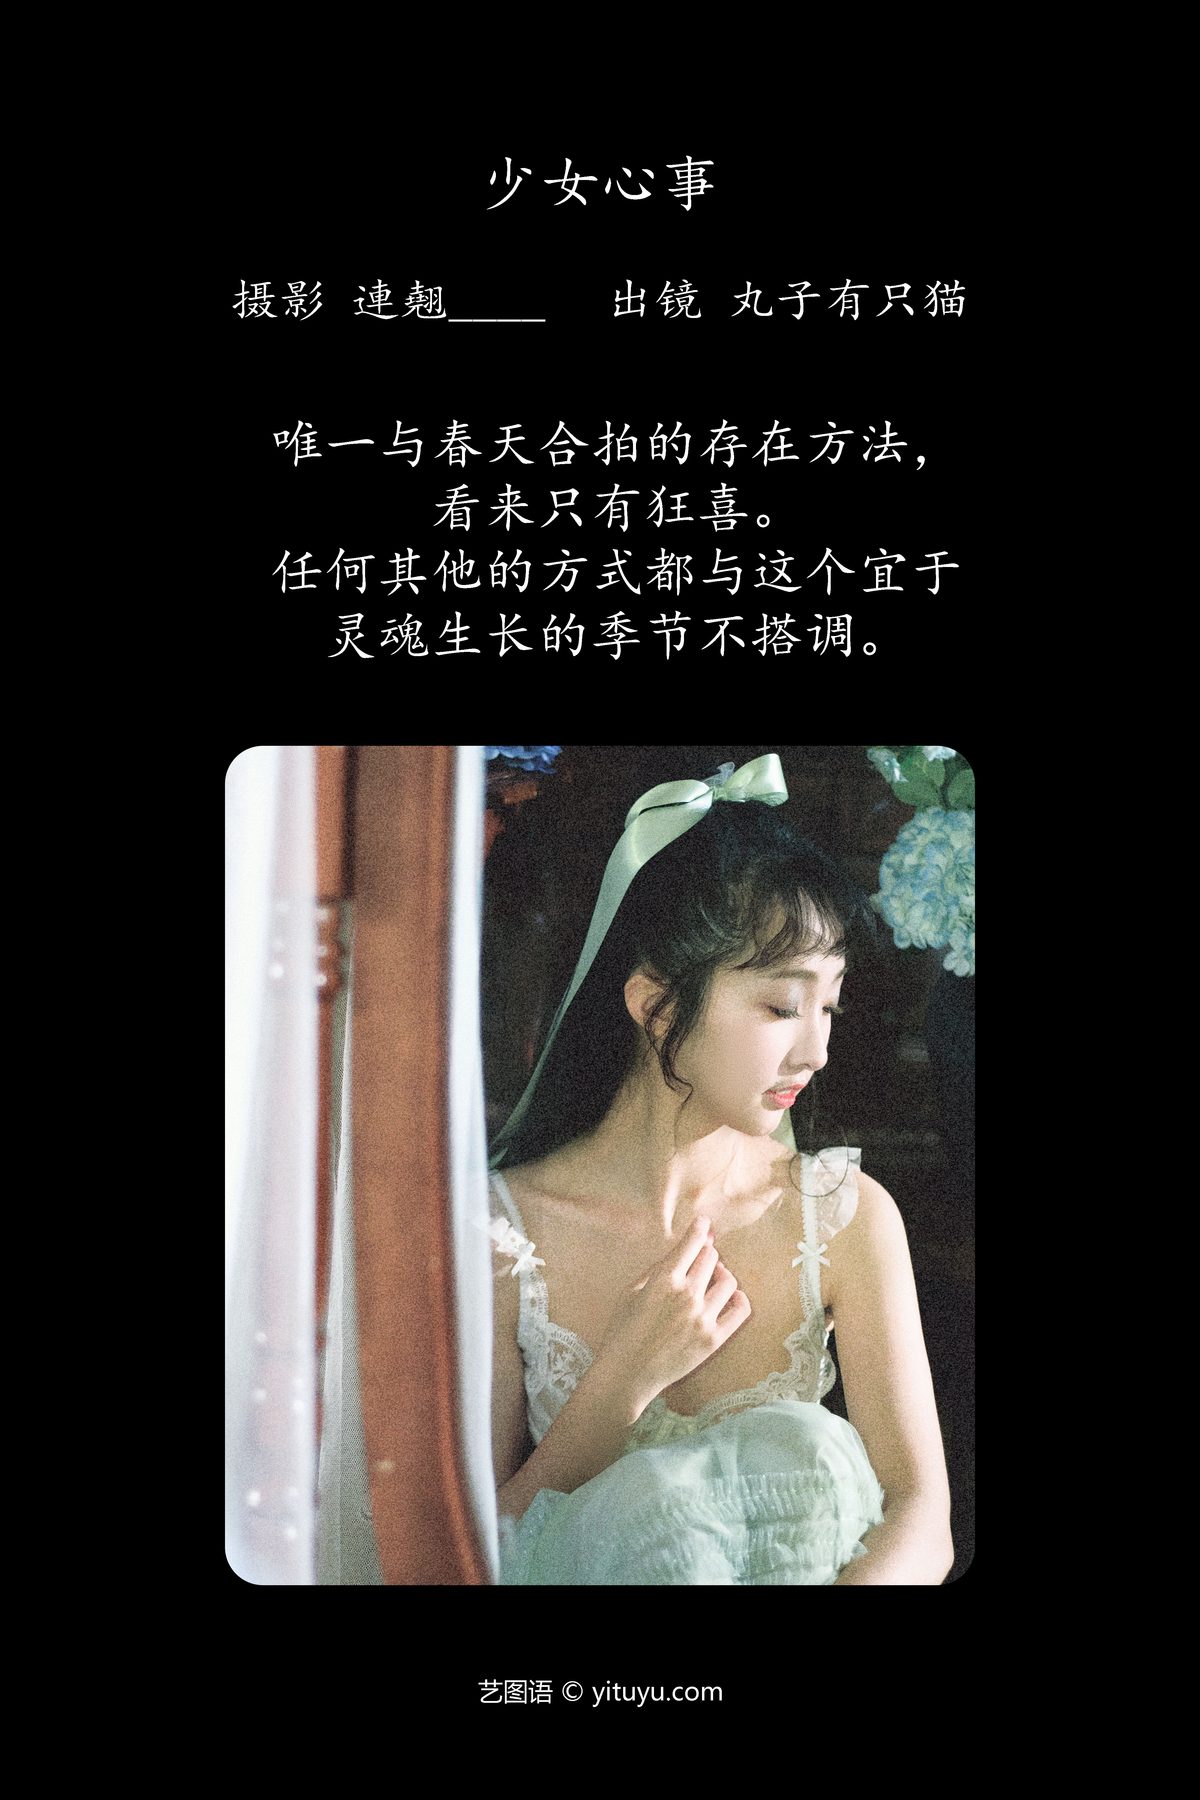 YiTuYu艺图语 Vol 4586 Wan Zi You Zhi Mao 0001 1786275398.jpg